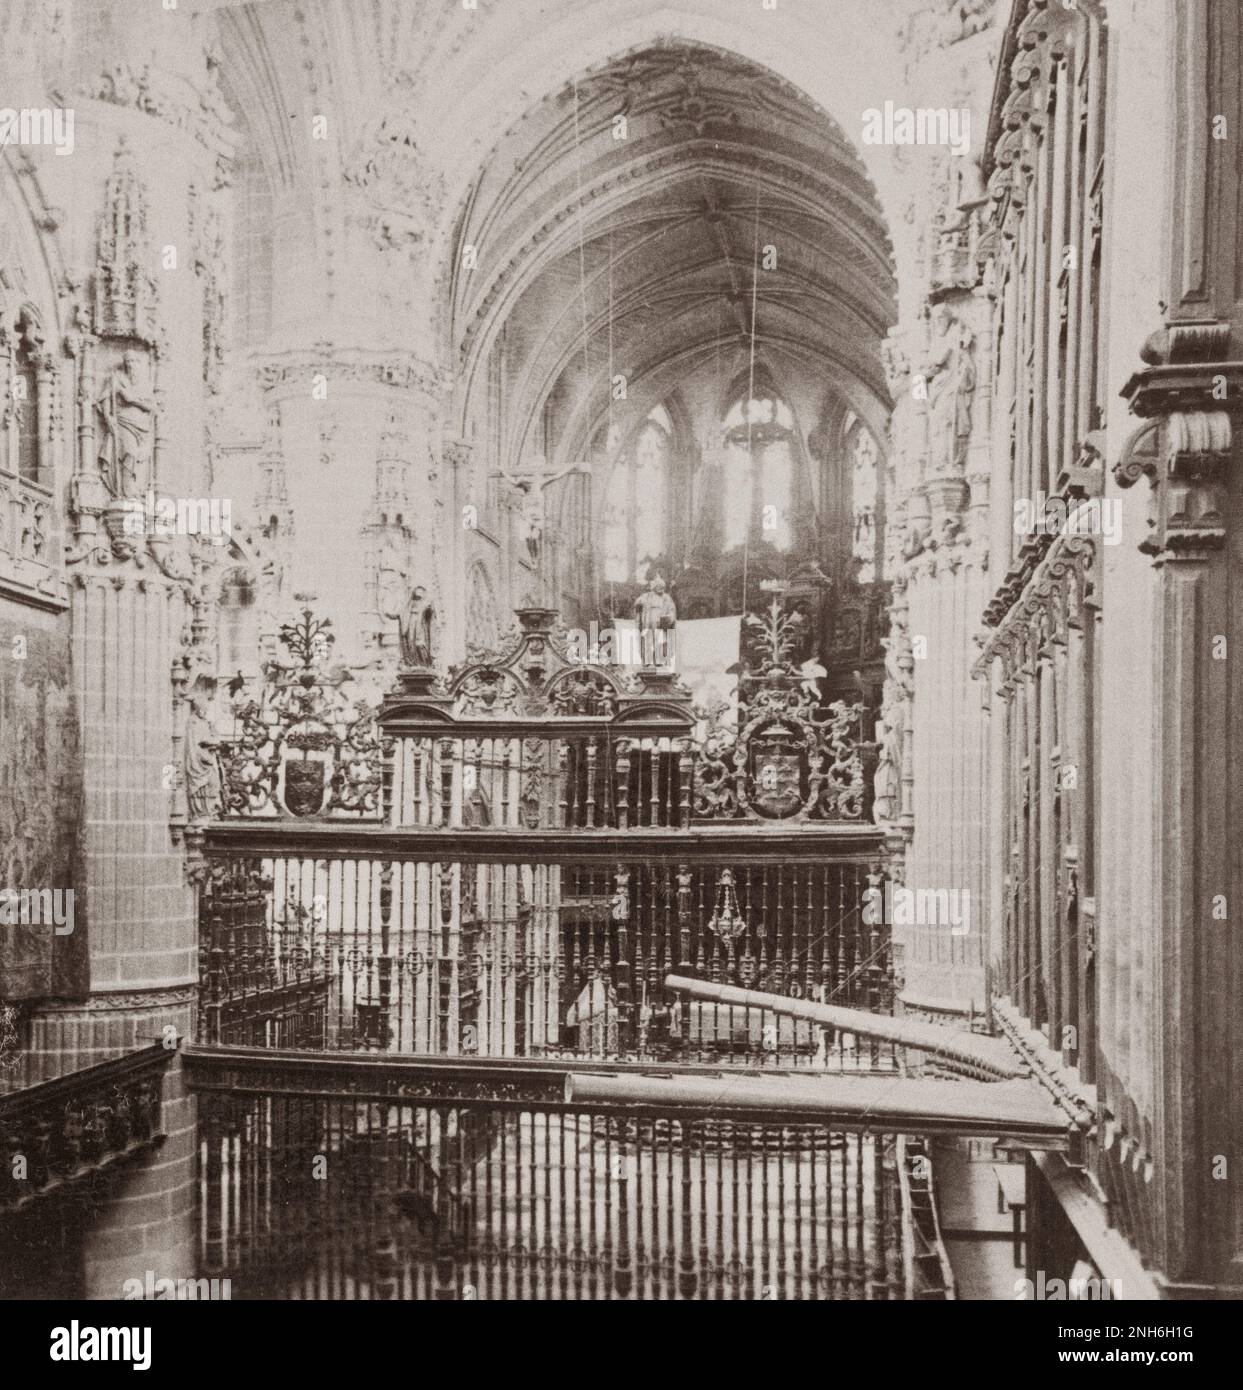 Architektur des alten Spaniens. In der Kathedrale von Burgos, Spanien, eines der reichsten Denkmäler der christlichen Architektur. 1902 Stockfoto